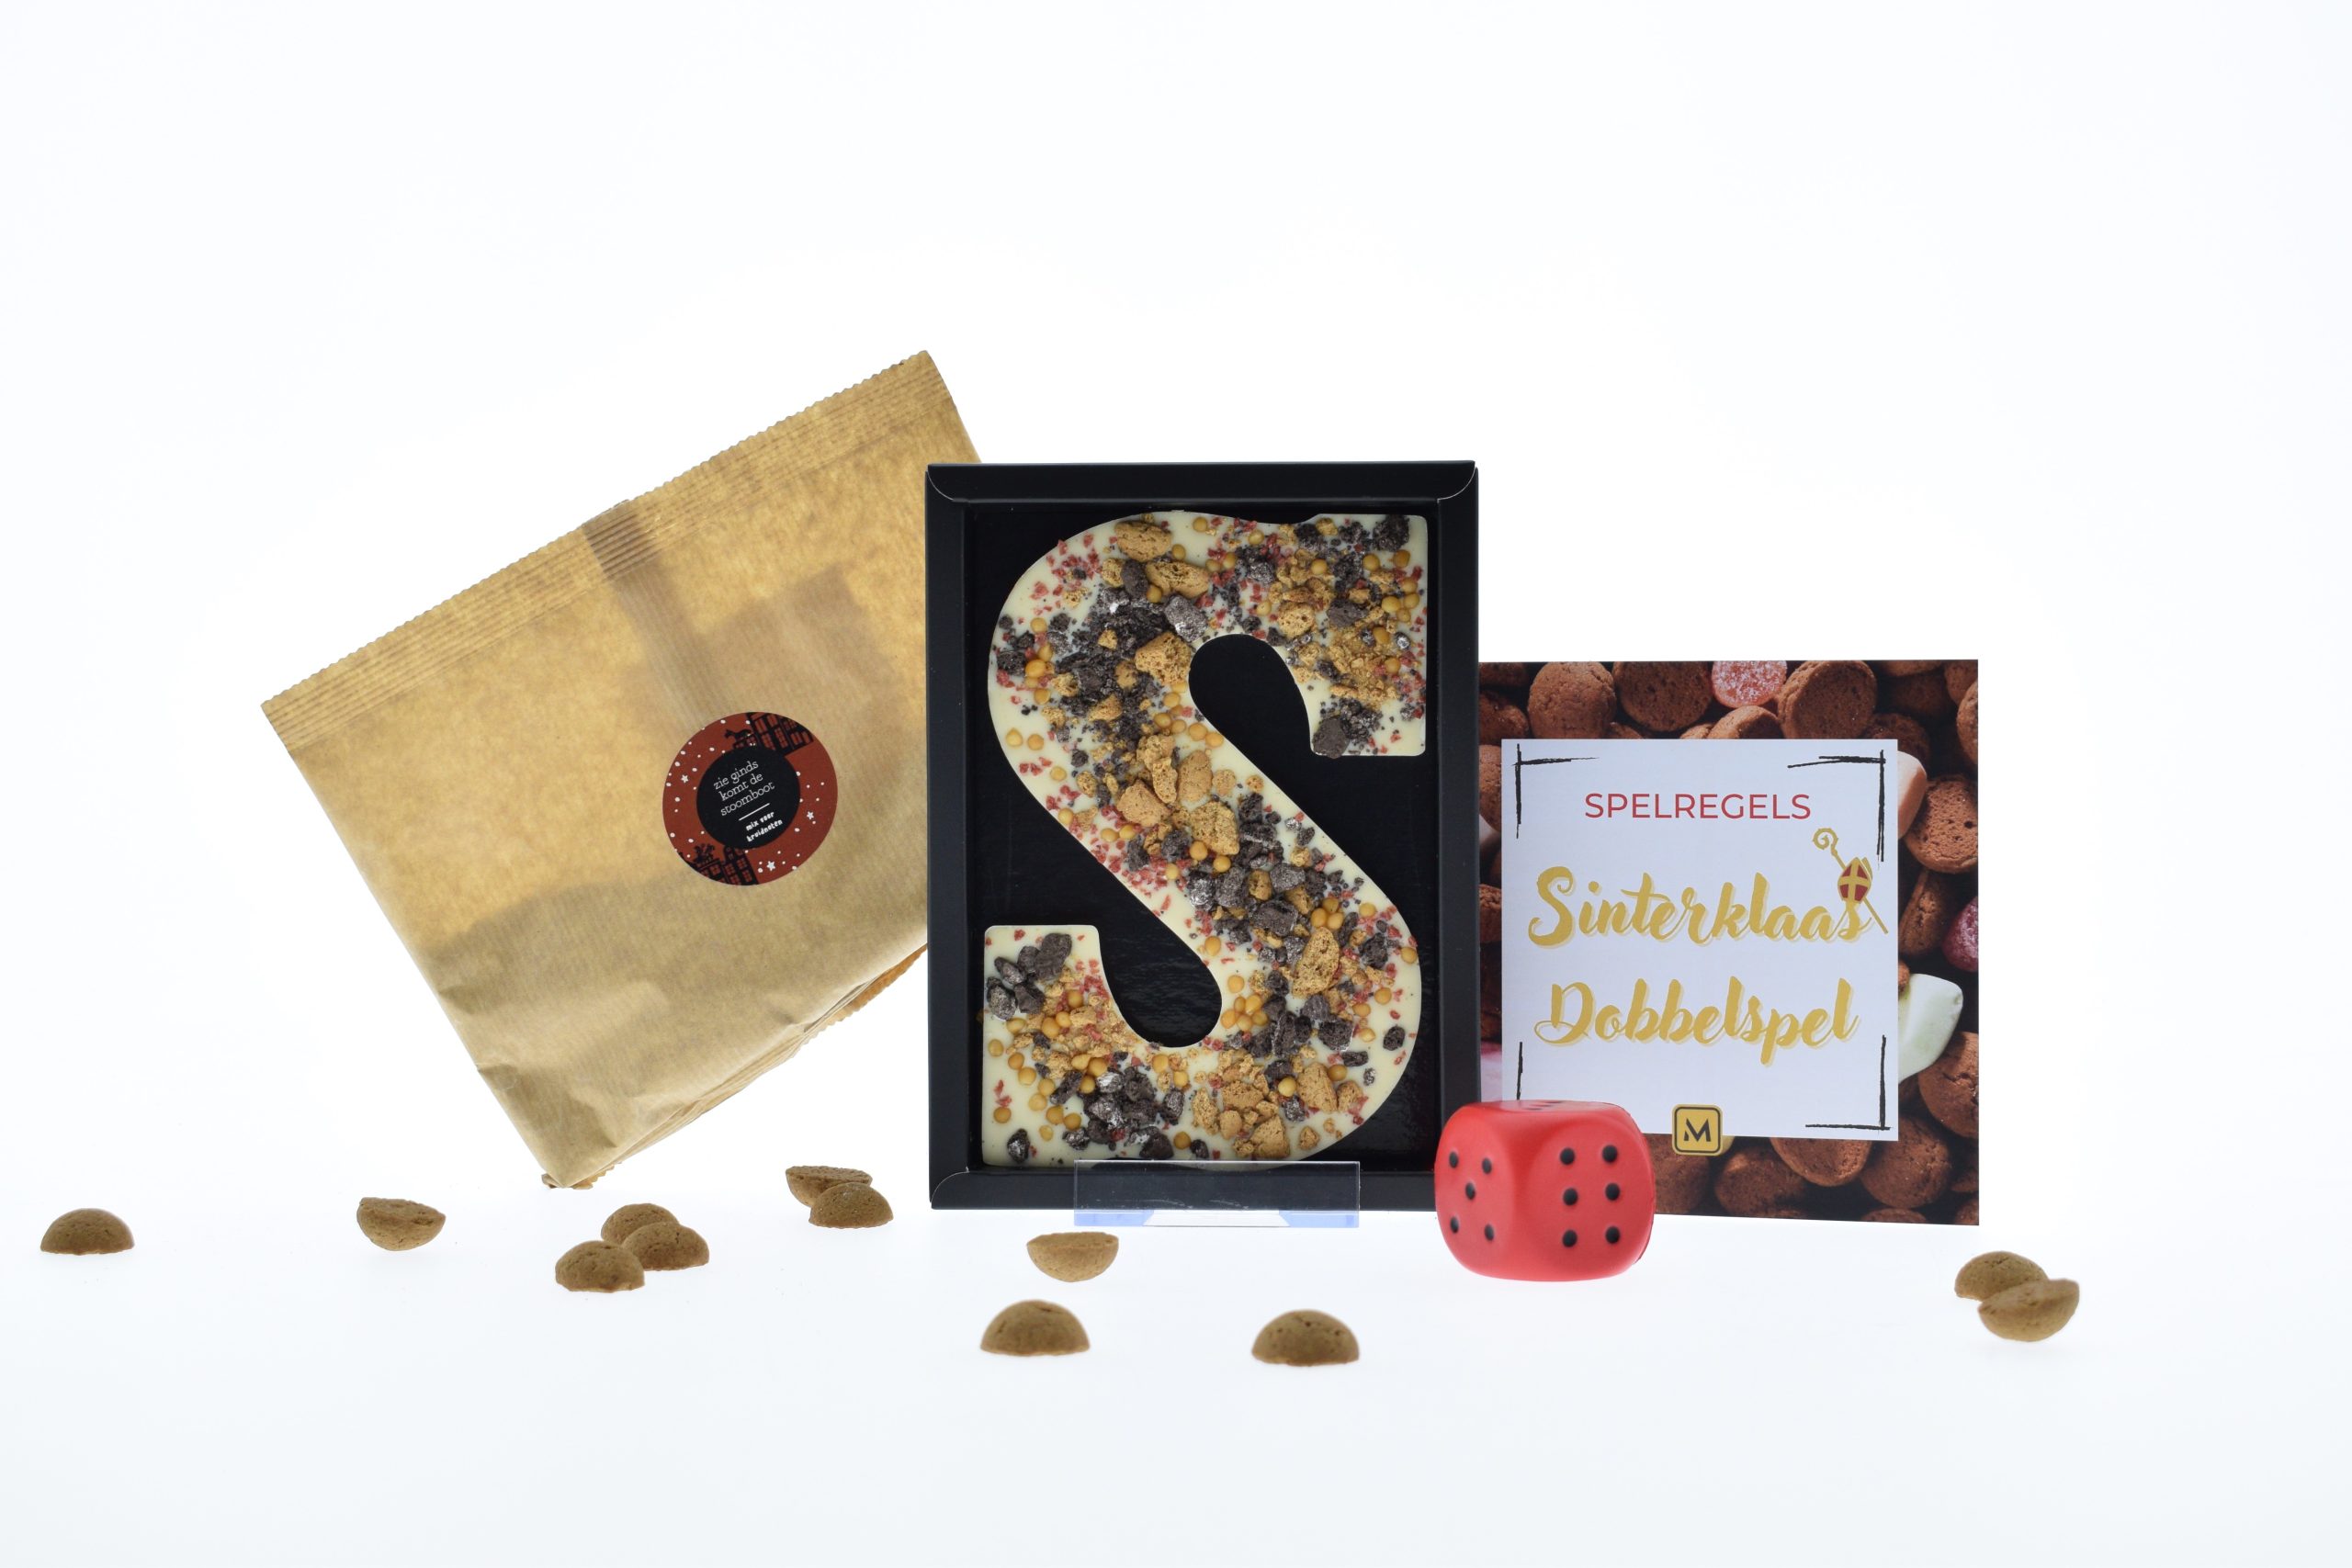 Sint23 - Sinterklaas dobbelspel. Kruidnotenmix om zelf te bakken, ambachtelijke chocolade letter en een dobbelspel.